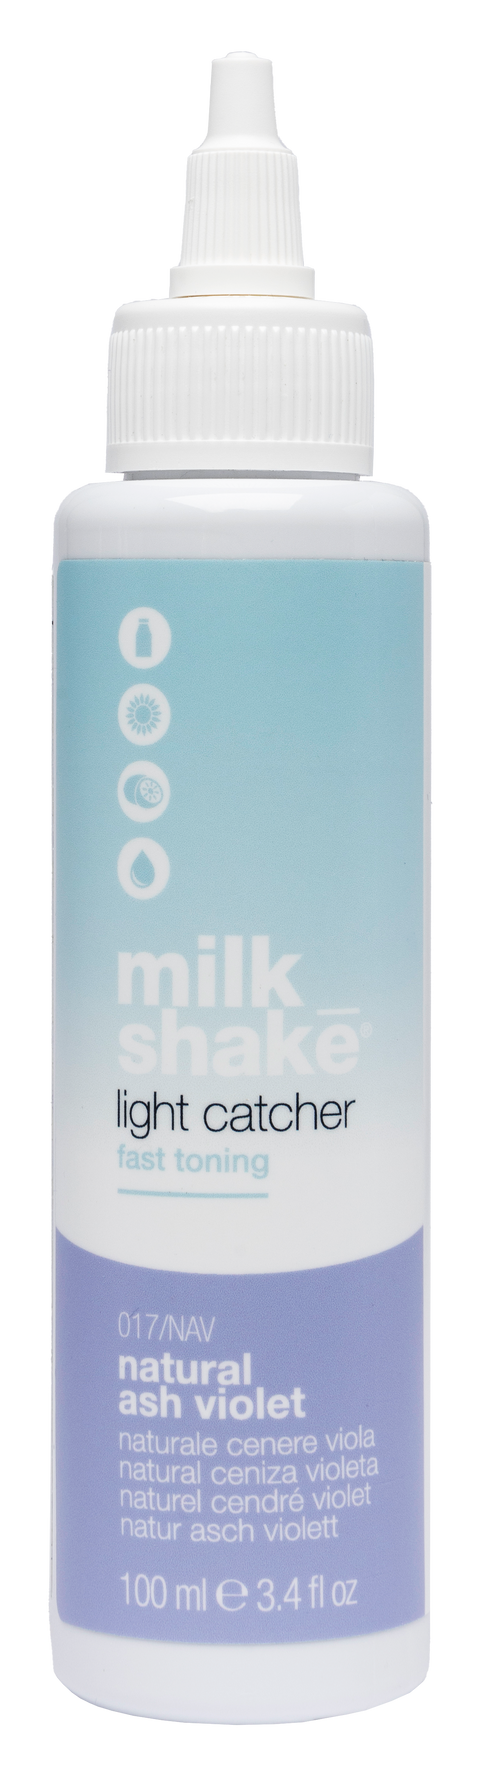 Milk Shake Light Catcher - Natural Ash Violet